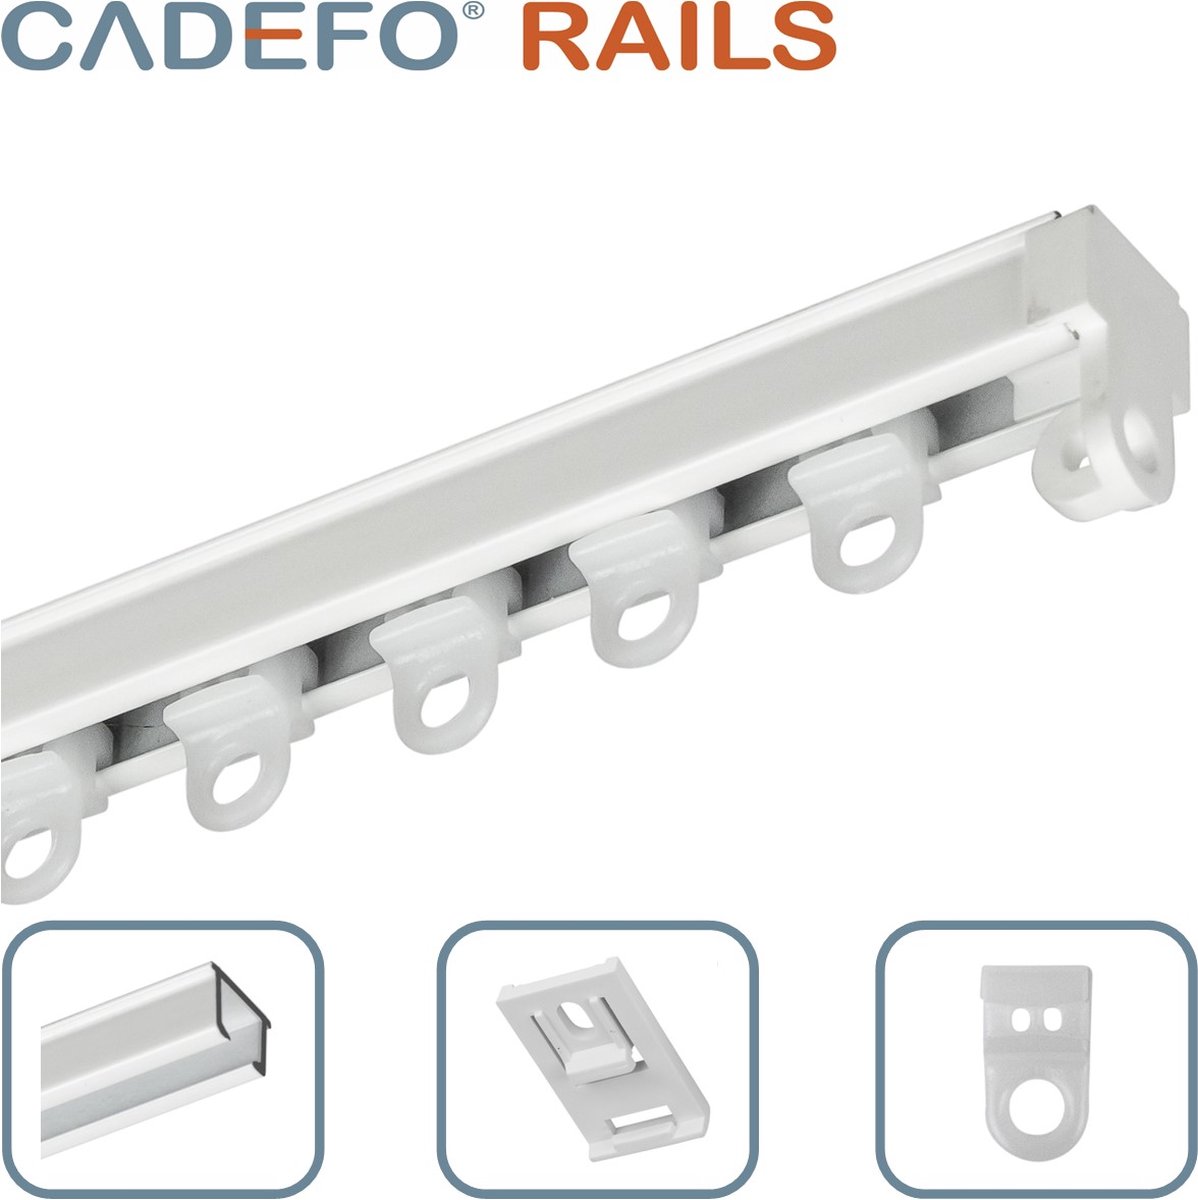 CADEFO RAILS (201 - 250 cm) Gordijnrails - Compleet op maat! - UIT 1 STUK - Leverbaar tot 6 meter - Plafondbevestiging - Lengte 214 cm